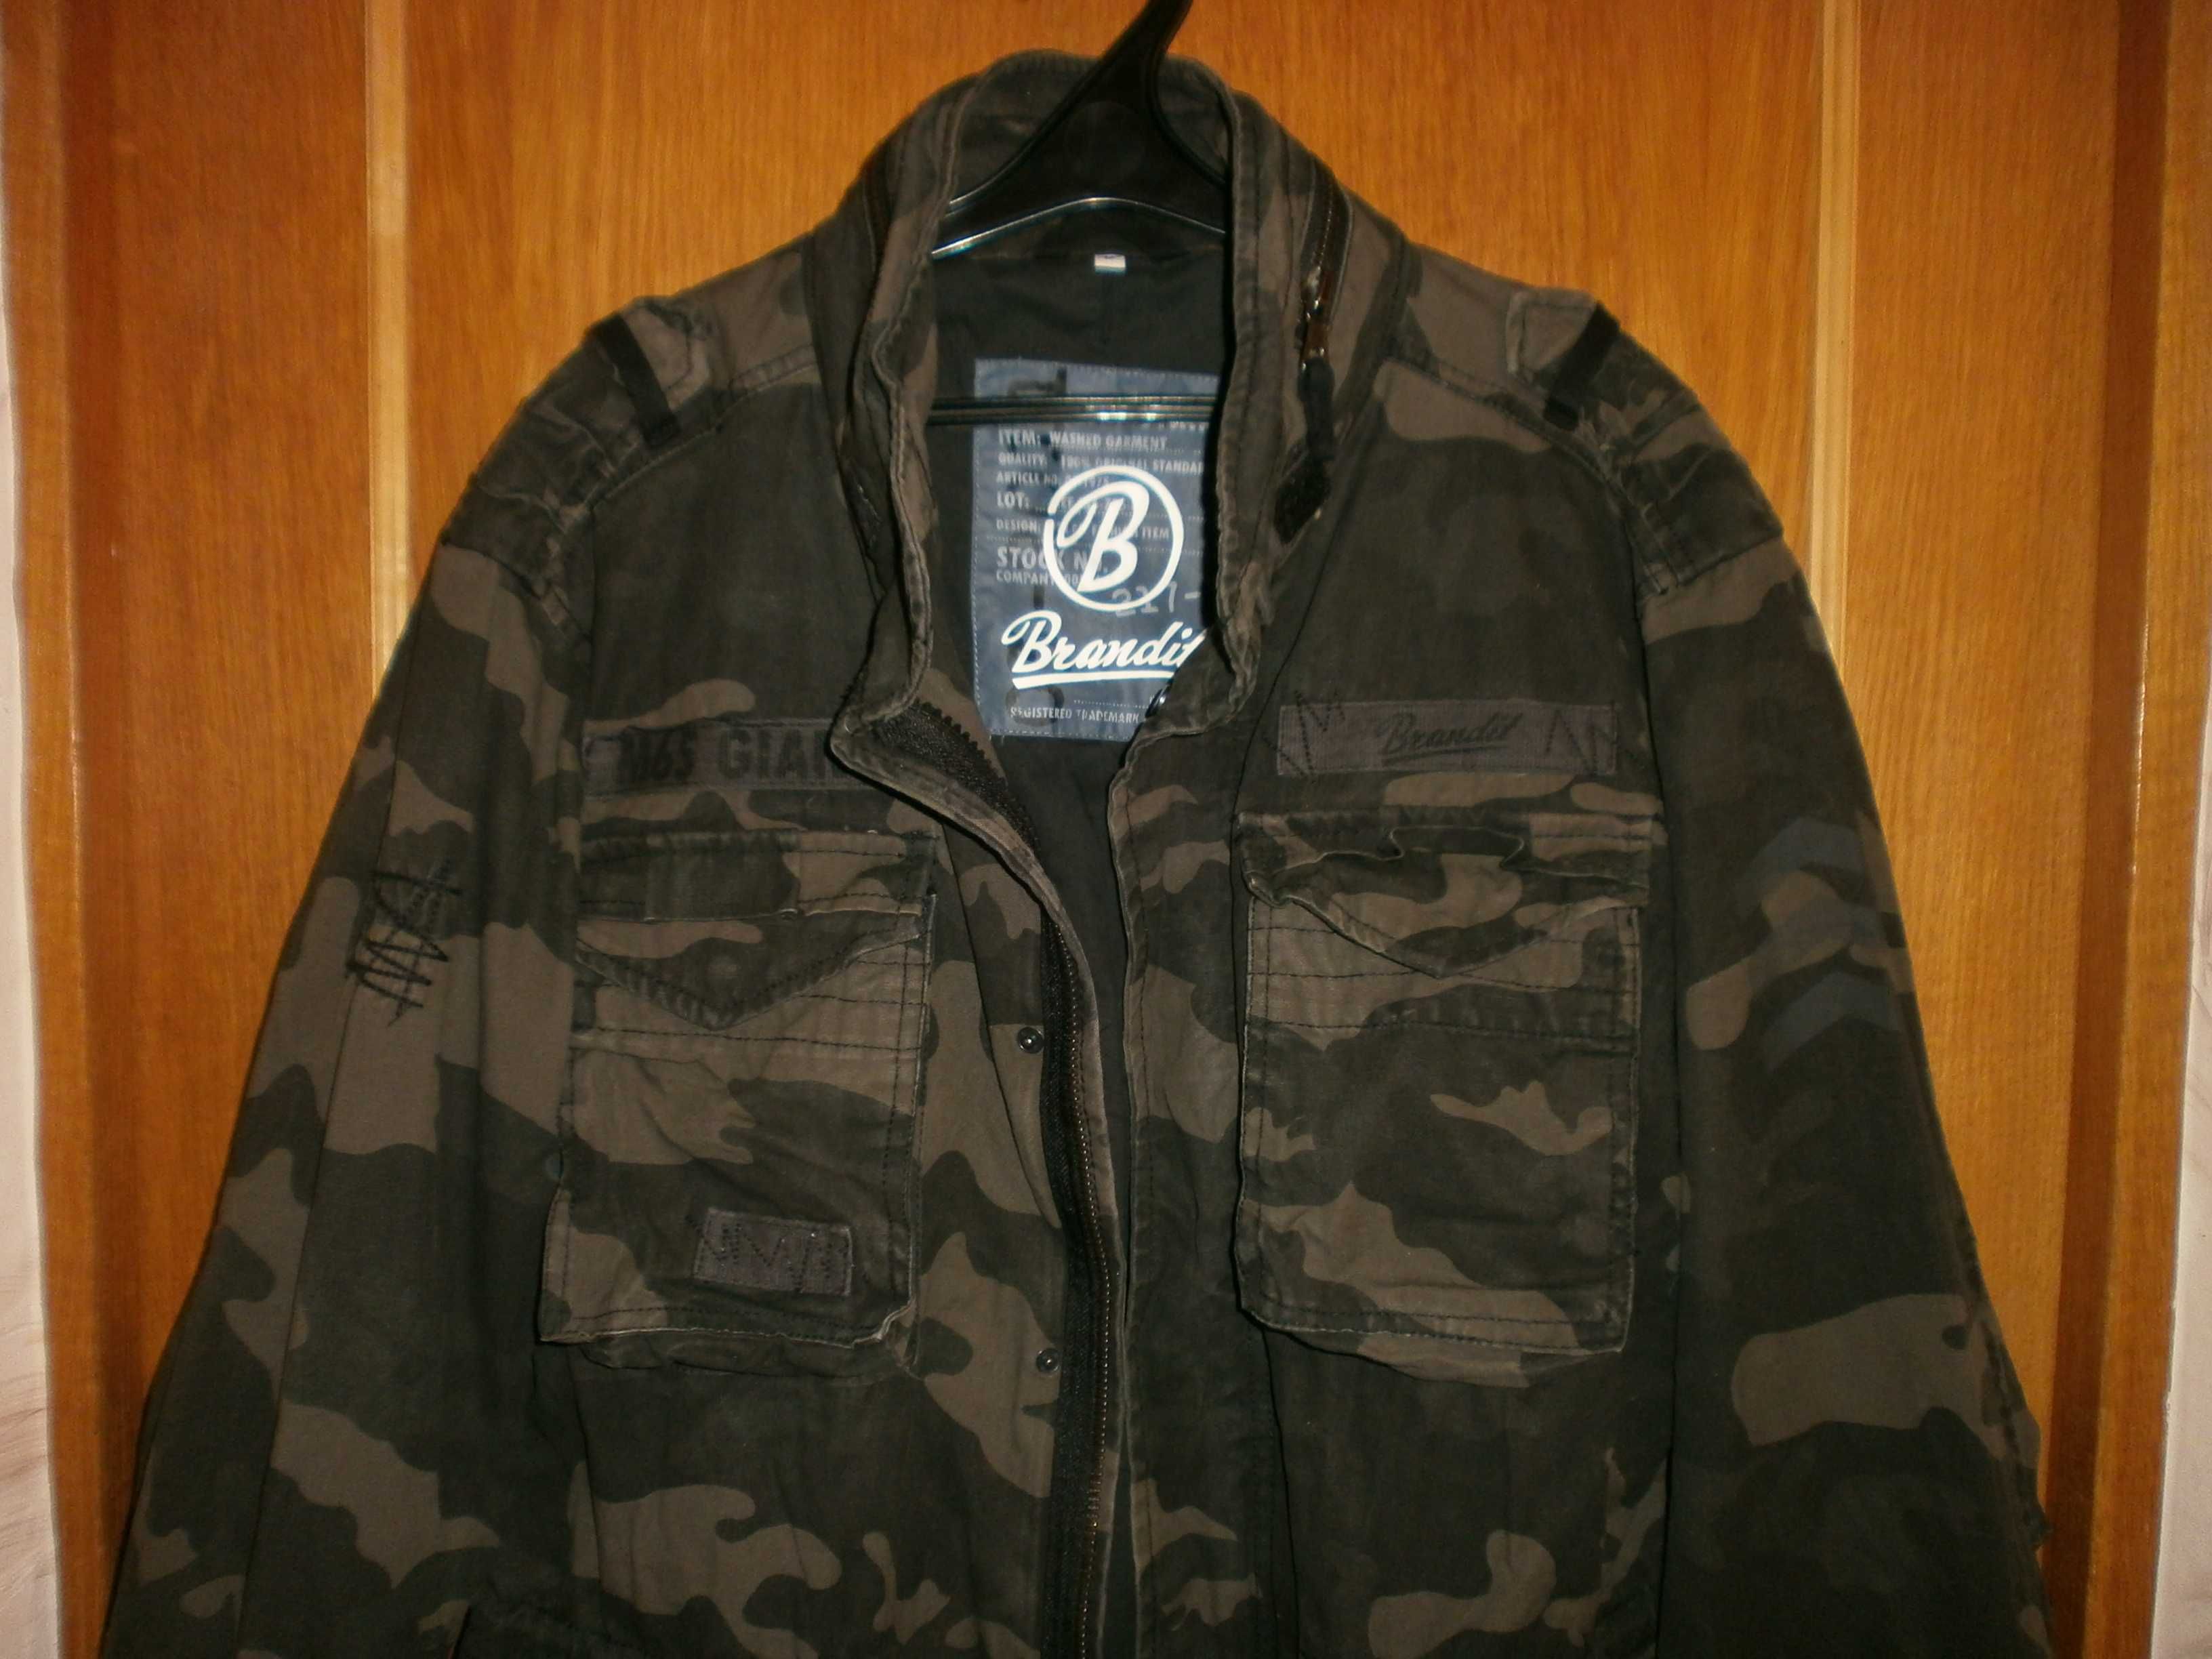 Куртка М65 NATO, Large-regular, олива, наш 54. ПОГ-64 см